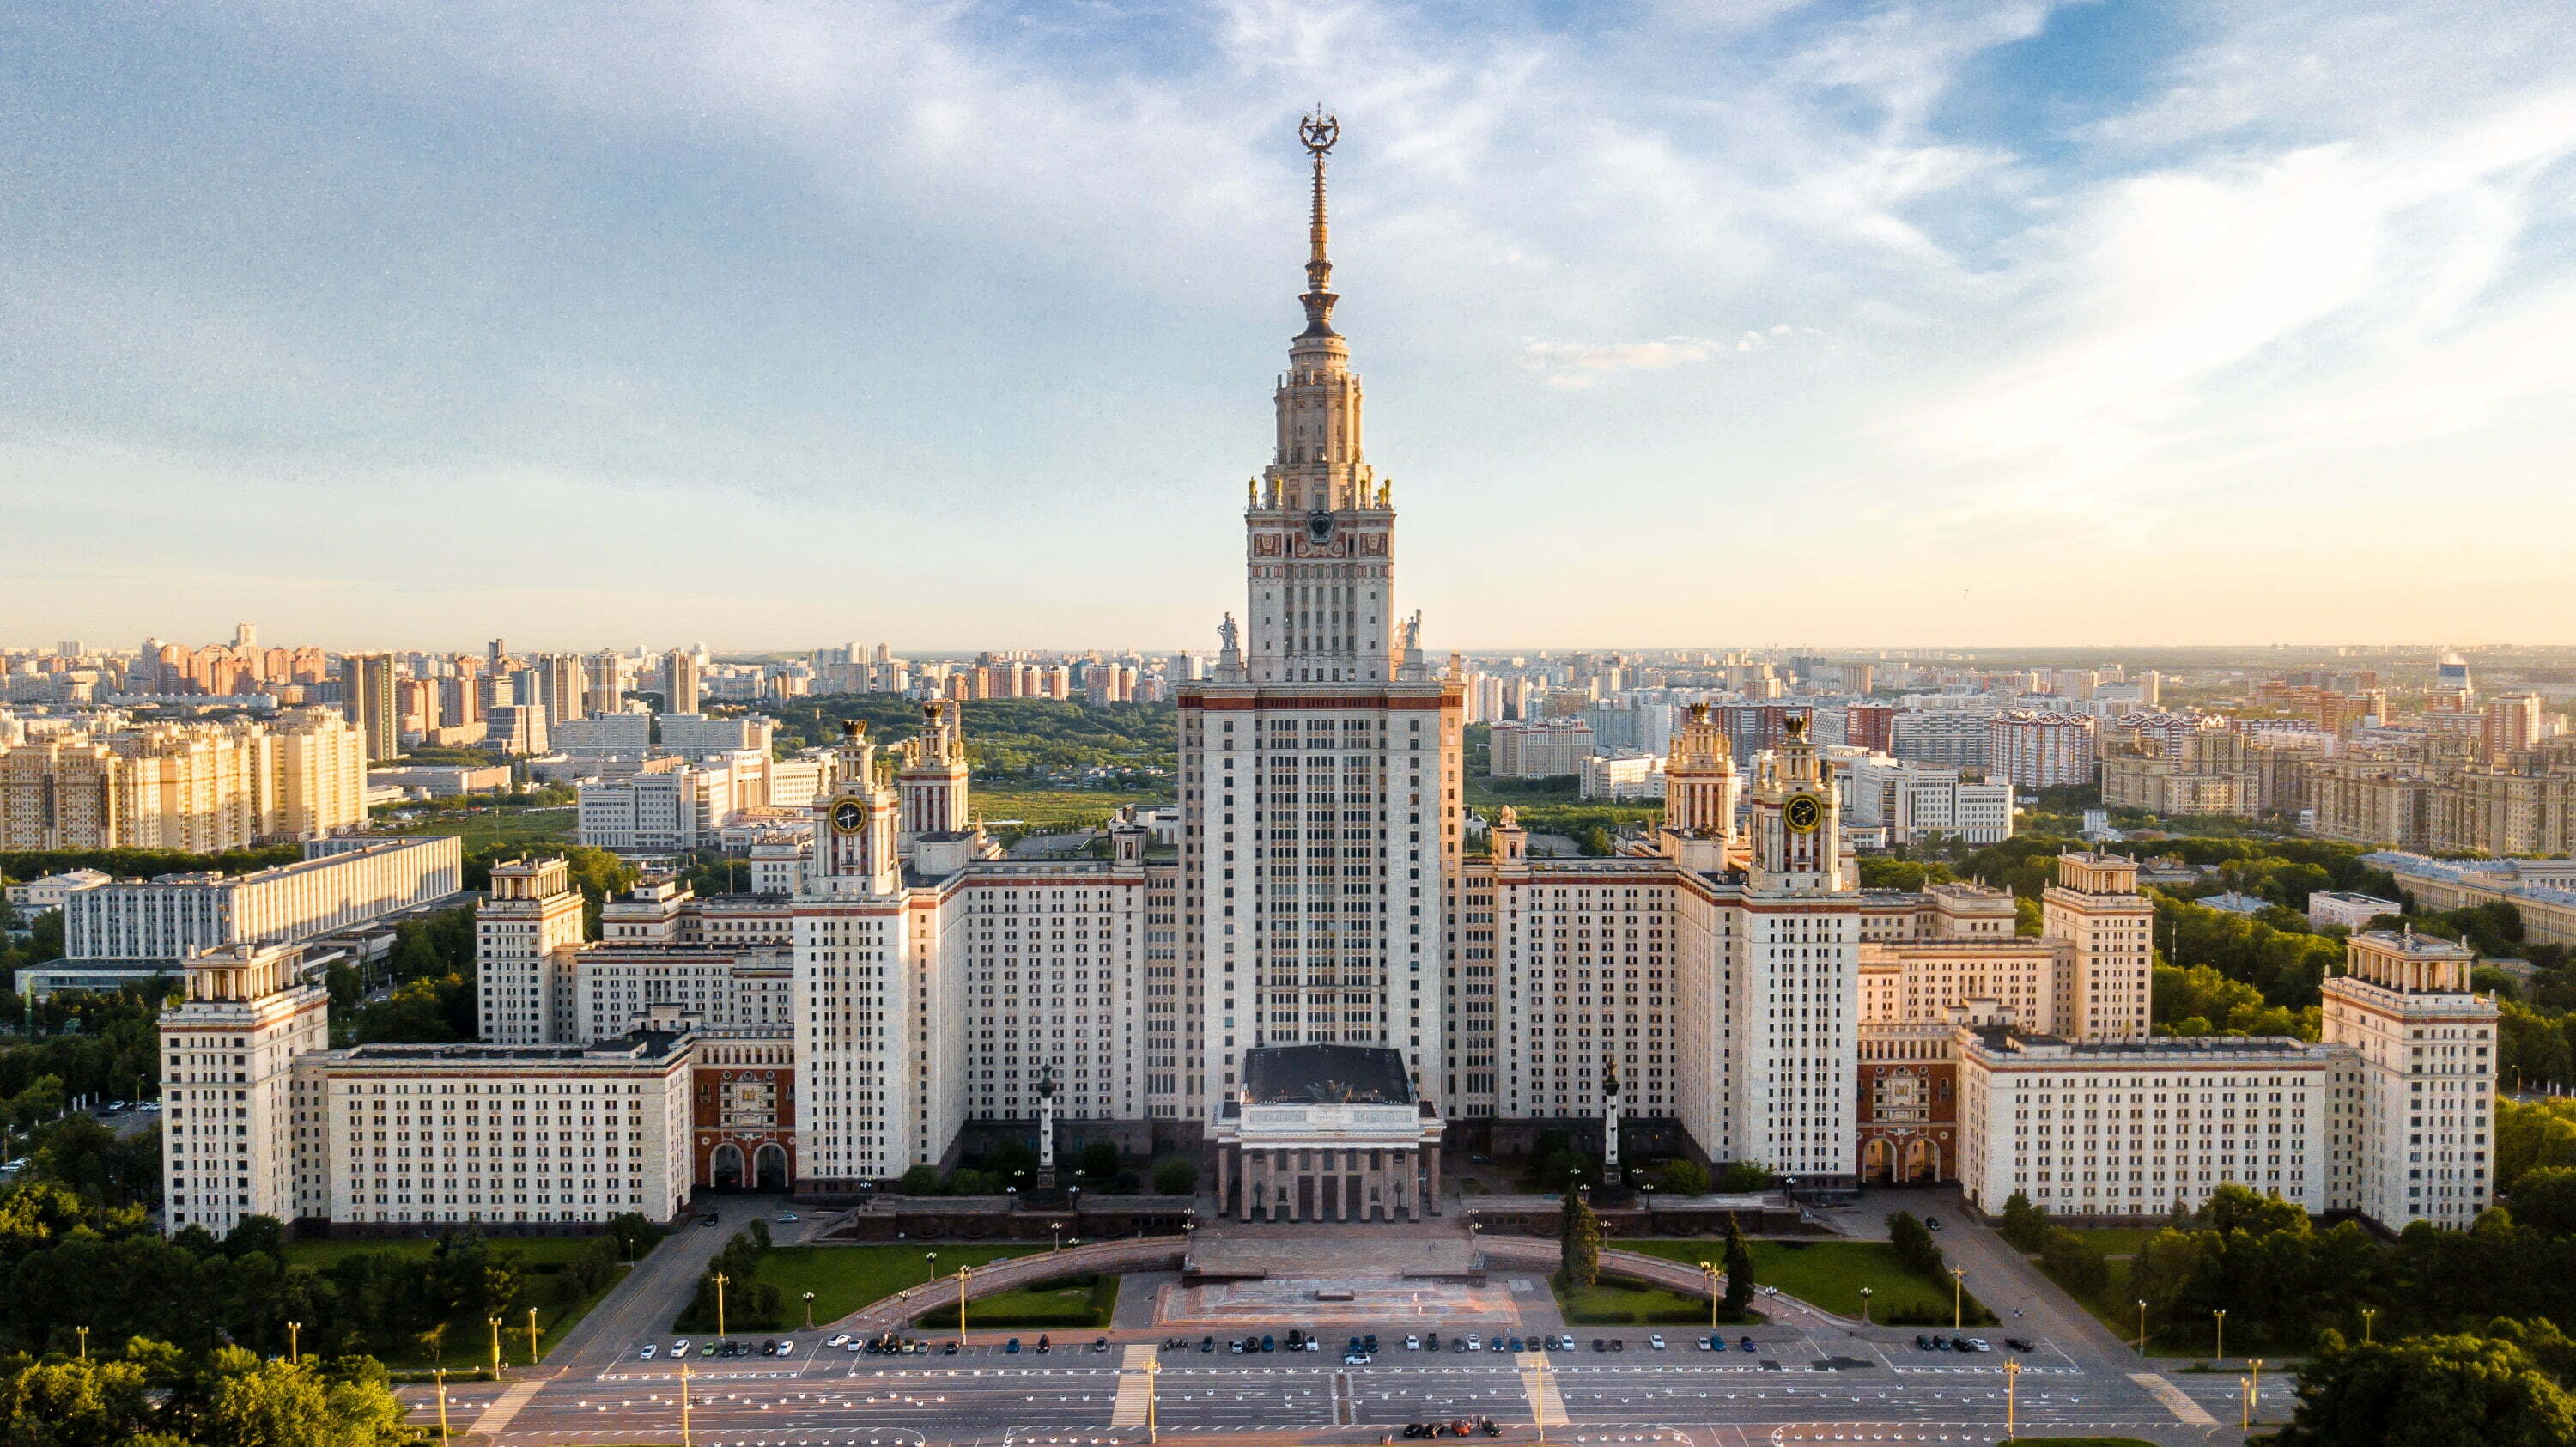 เที่ยวรัสเซีย มอสโคว์ มหาวิทยาลัยมอสโก Moscow State University (MSU)